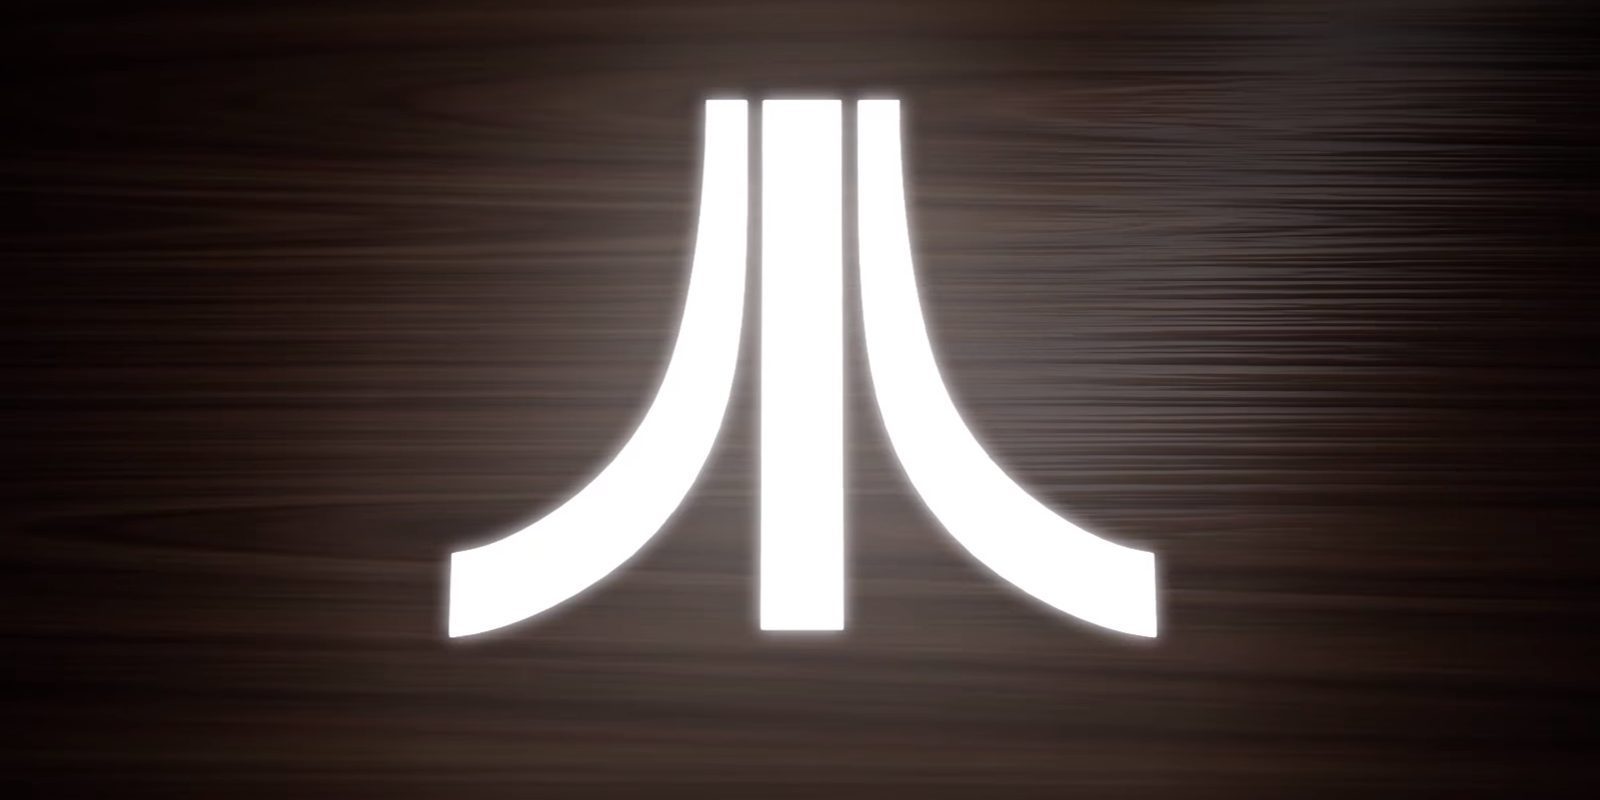 Atari muestra un teaser de Ataribox, su nueva videoconsola